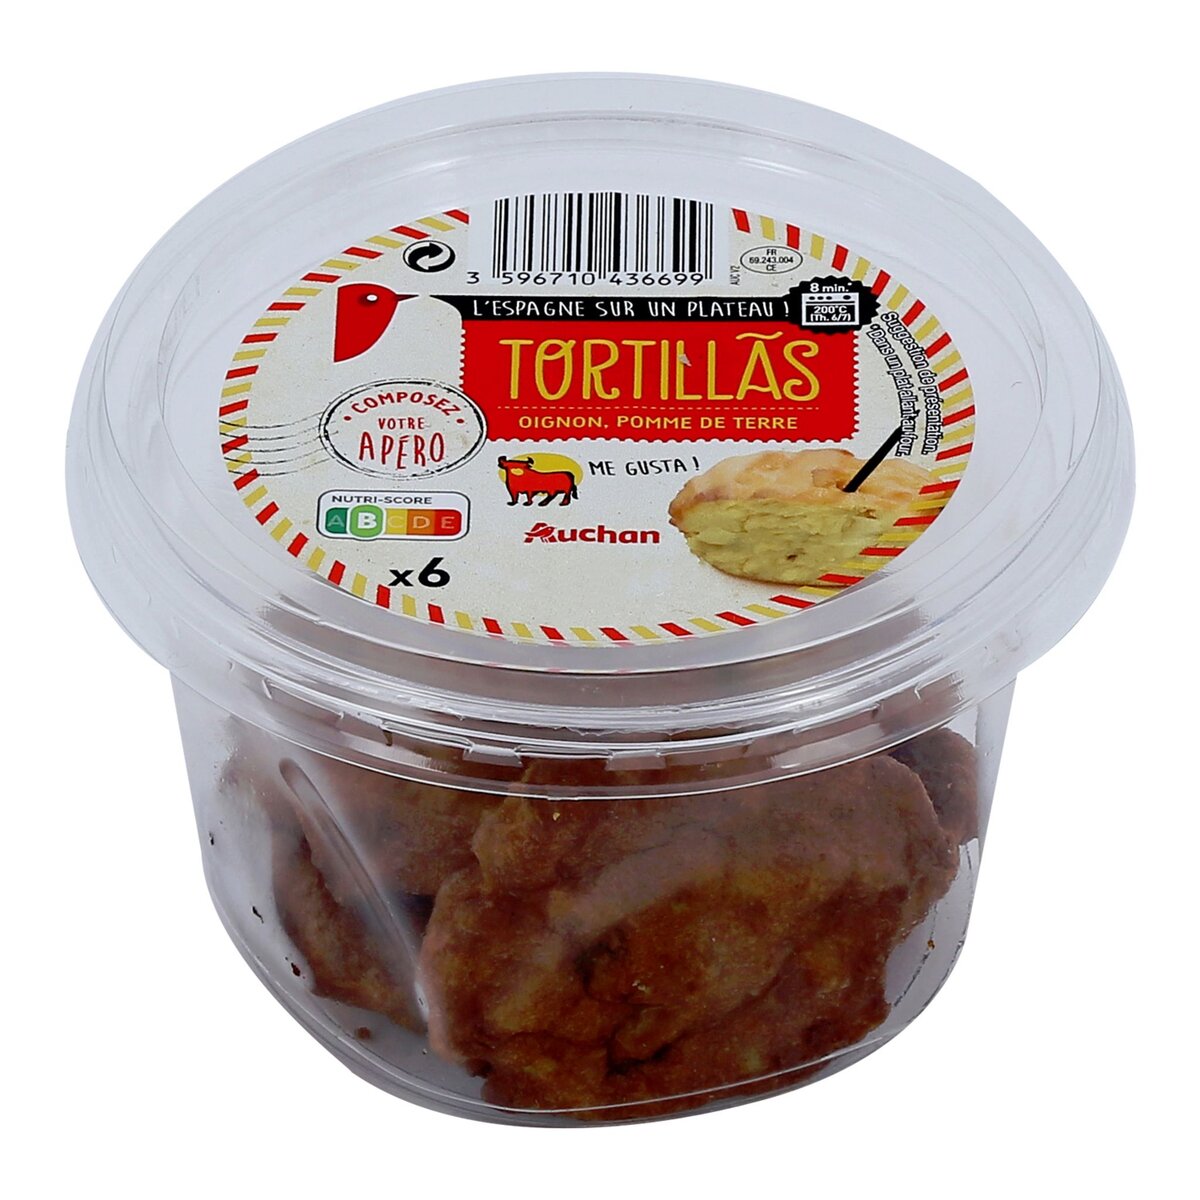 AUCHAN Tortillas oignon pomme de terre 6 pièces 90g